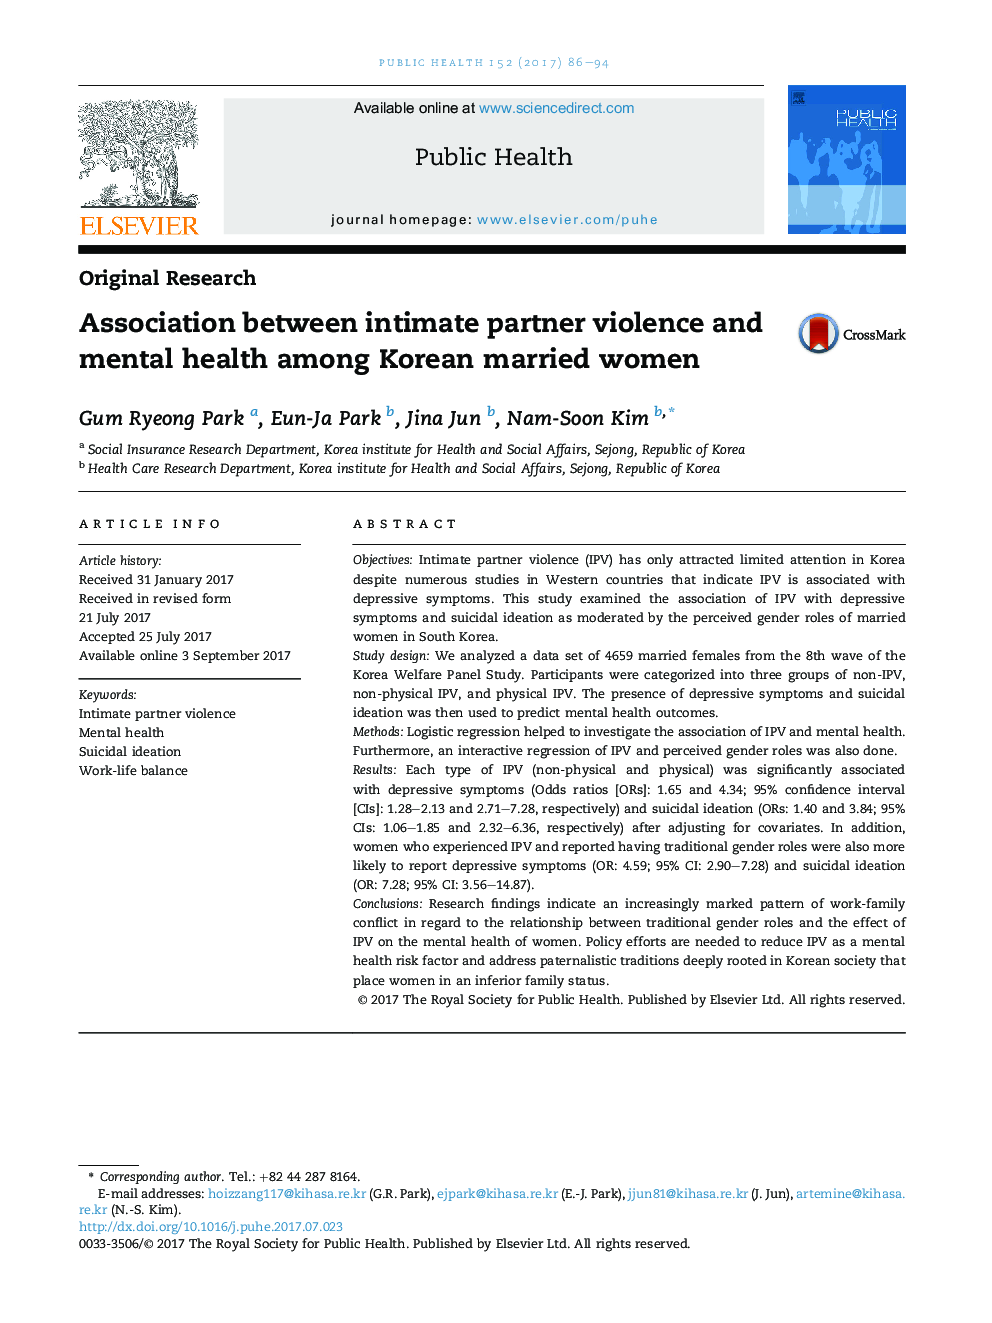 ارتباط بین خشونت شریک صمیمانه و سلامت روان در میان زنان متاهل کره ای 